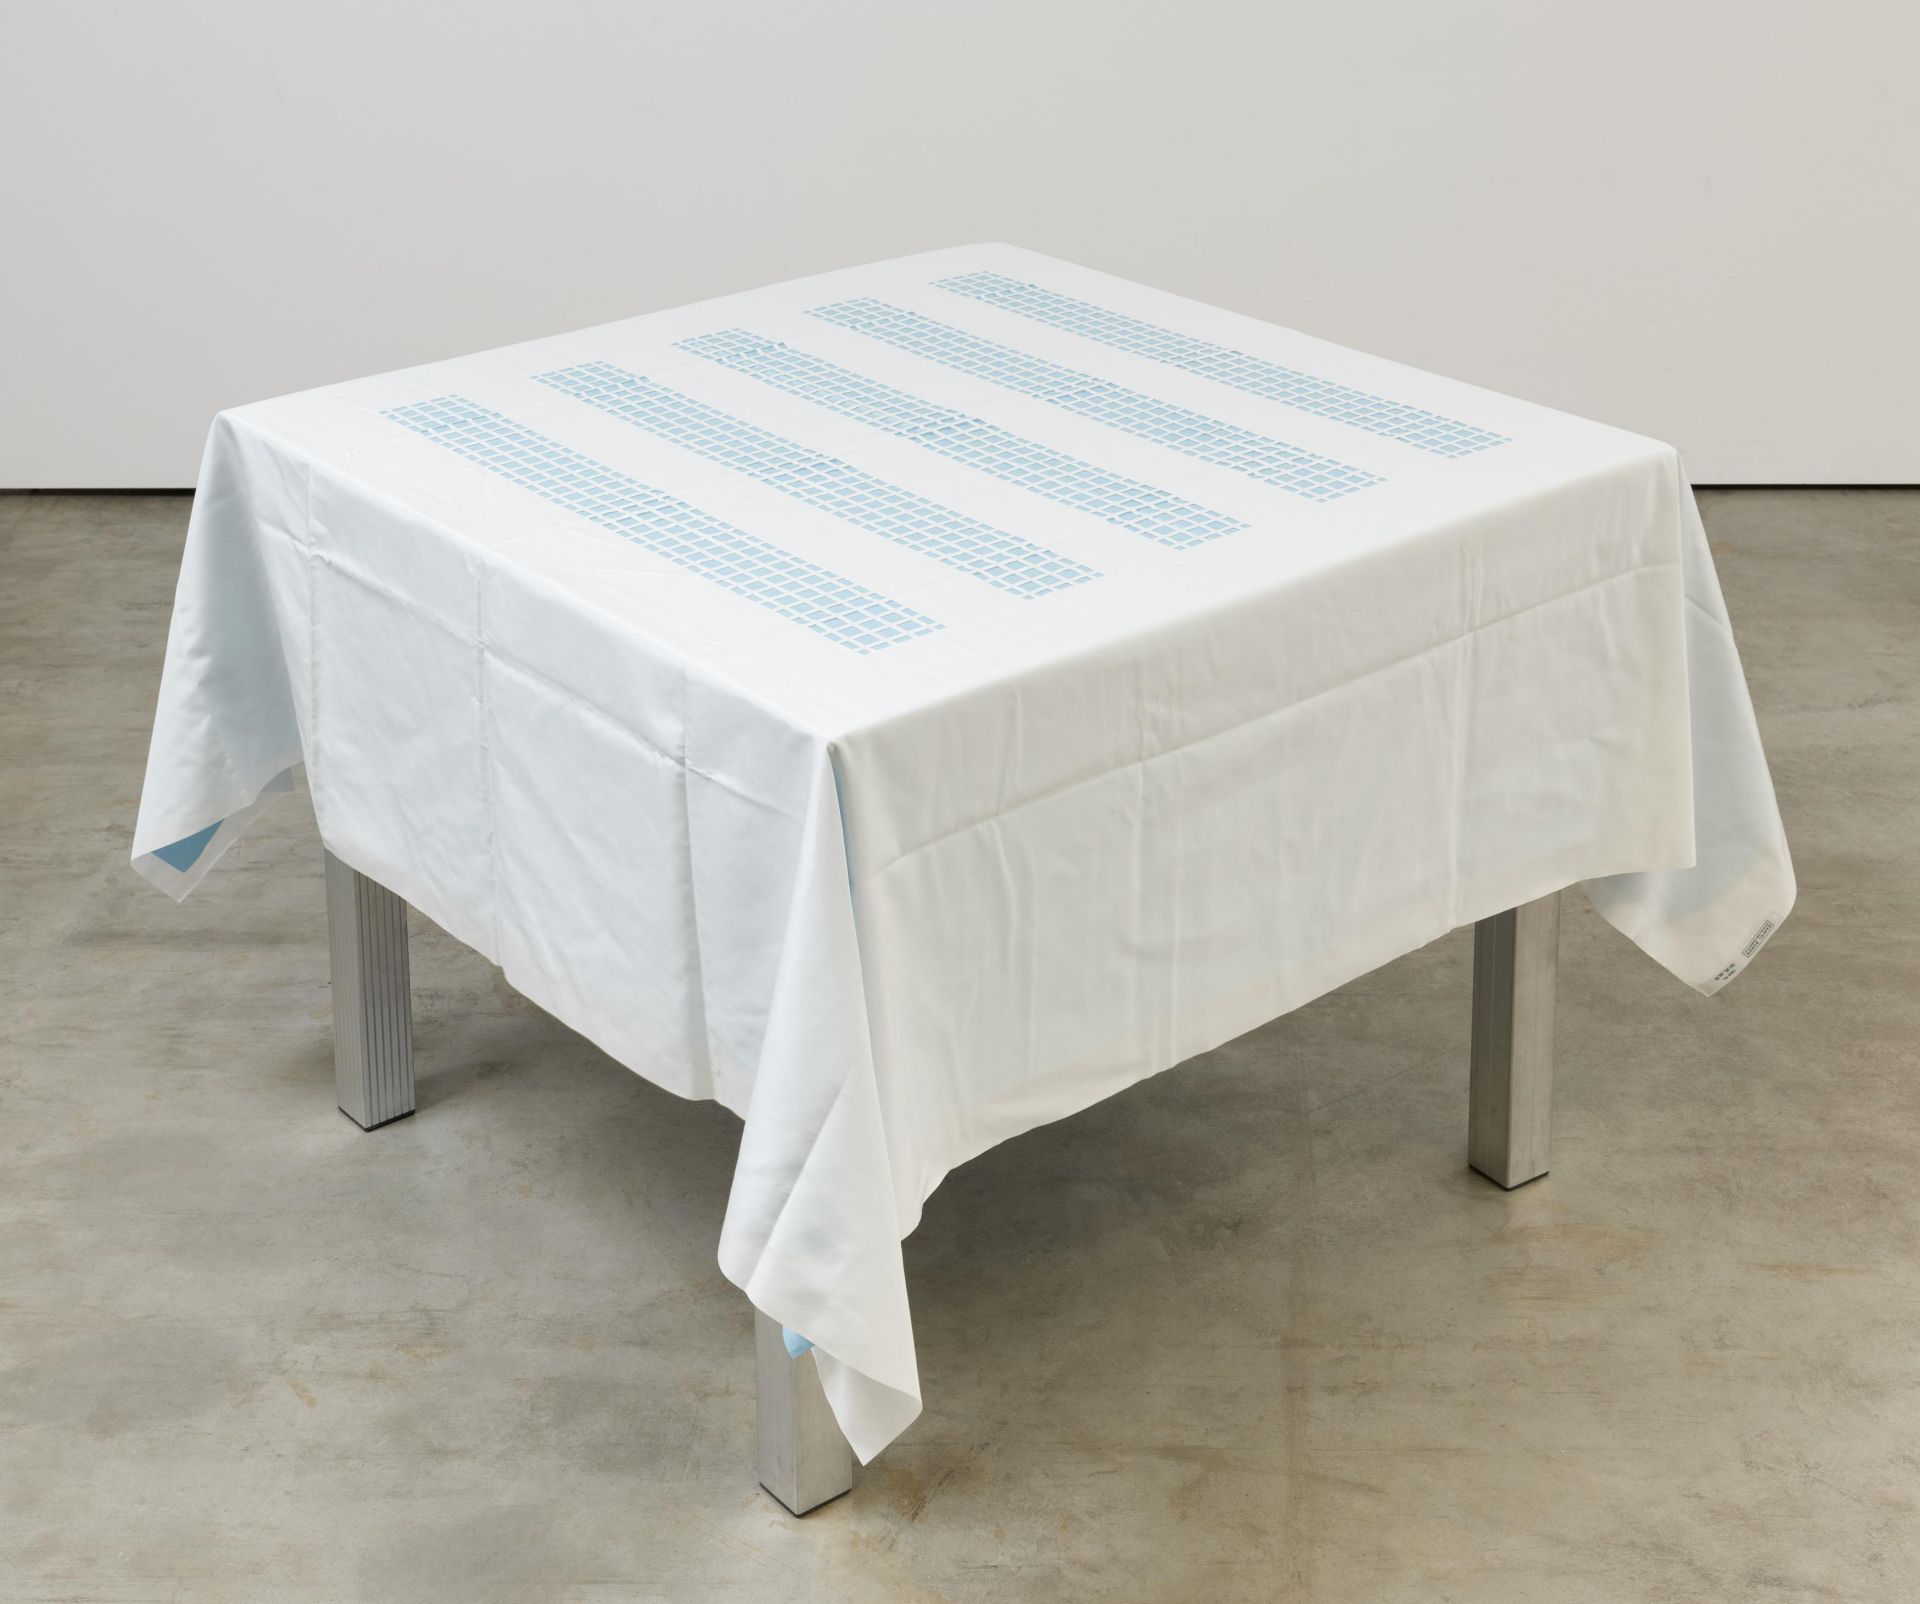 Daniel Buren: Unique Tablecloth with Laser-Cut Lace (für Parkett 66) - Bild 2 aus 2